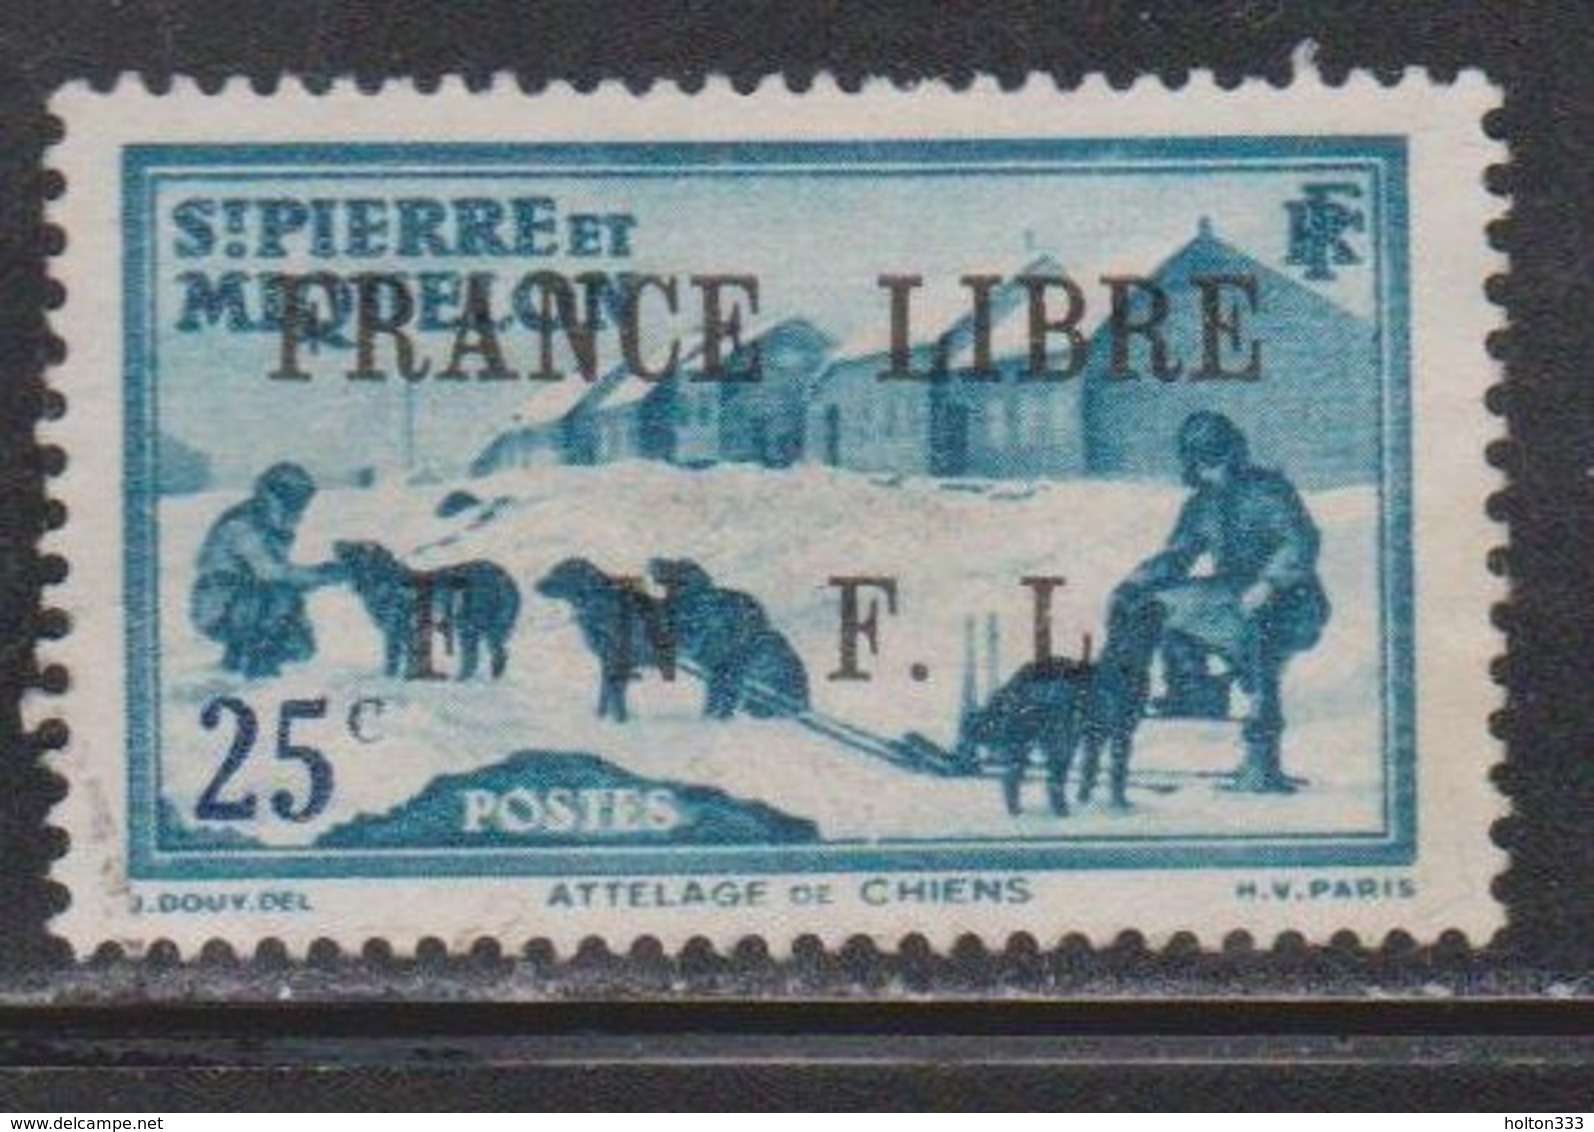 ST PIERRE & MIQUELON Scott # 229 Used - Dog Team With France Libre FNFL Overprint - Oblitérés